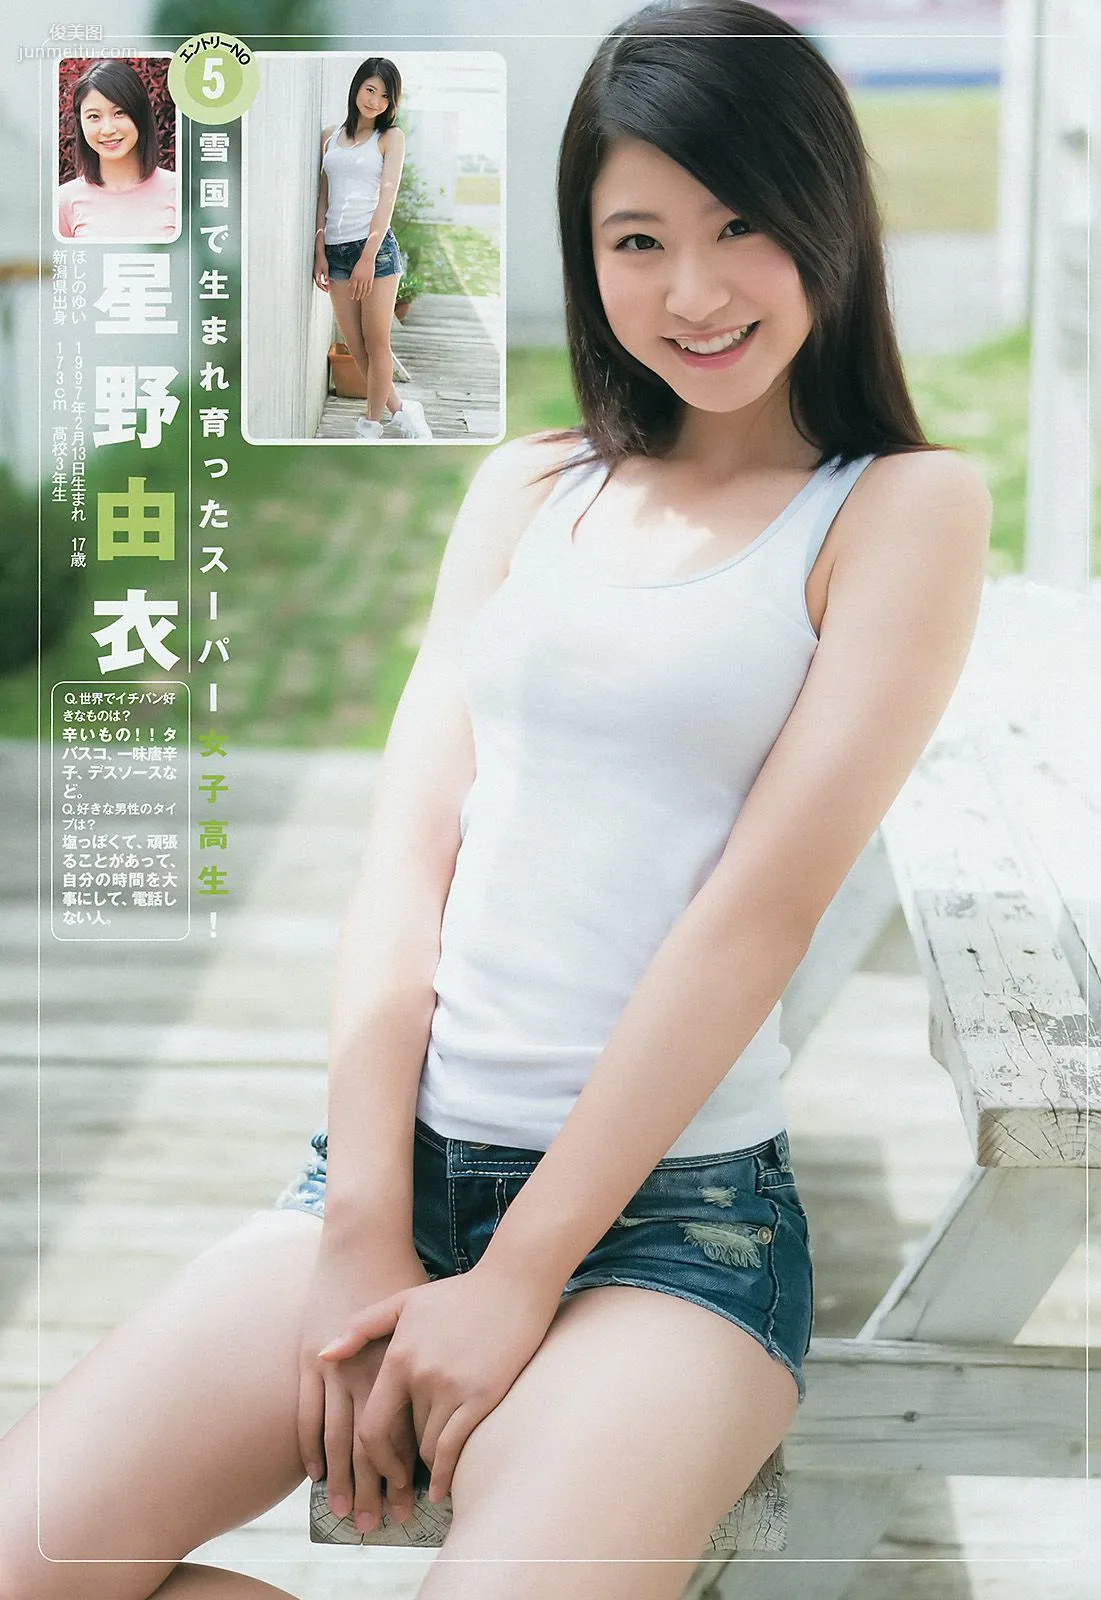 ギャルコン2014 制コレ アルティメット2014 大阪DAIZY7 [Weekly Young Jump] 2014年No.42 写真杂志6